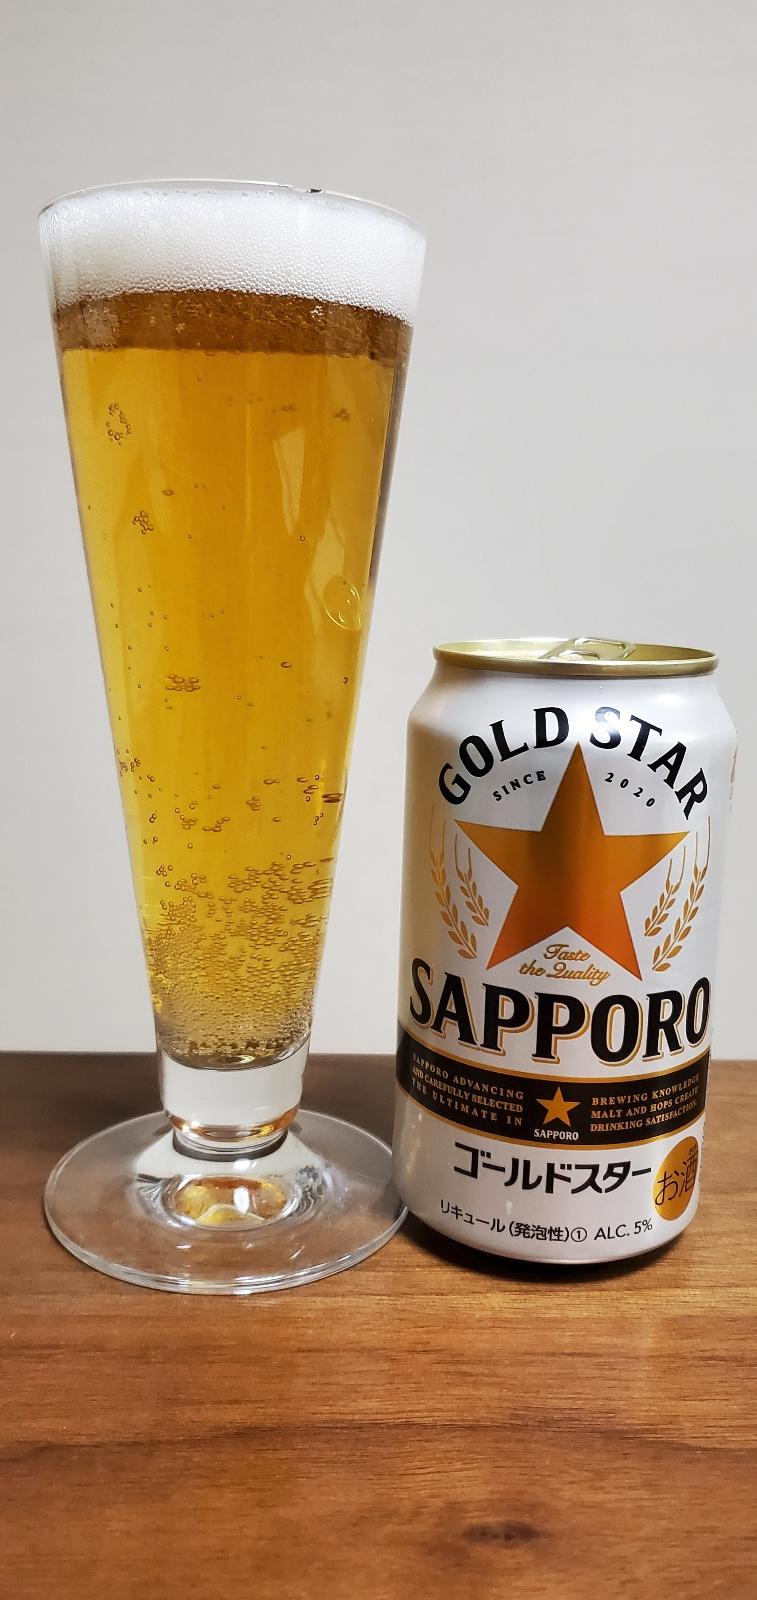 Sapporo Gold Star